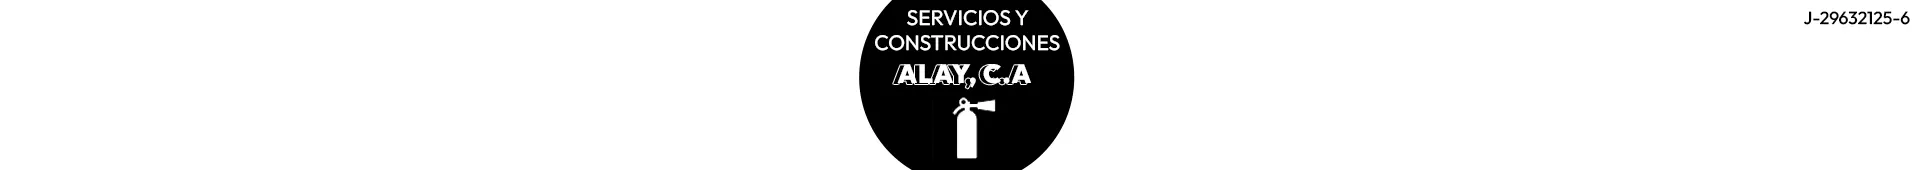 Imagen 1 del perfil de Servicios y Construcciones Alay